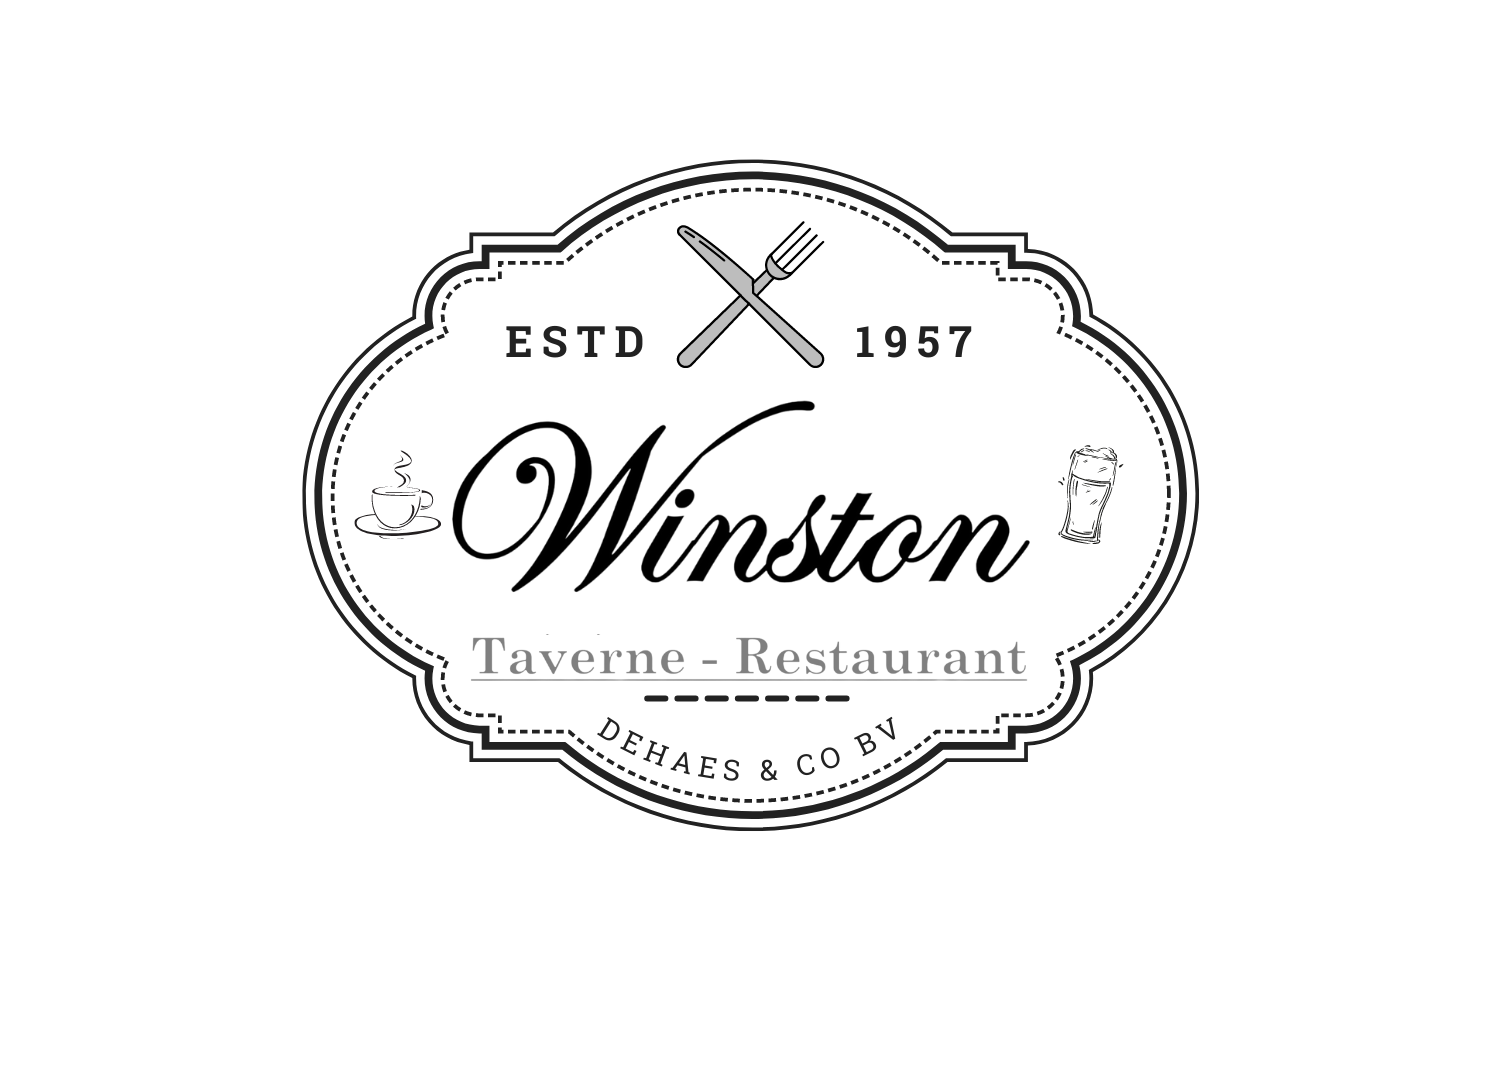 Taverne-Restaurant Winston